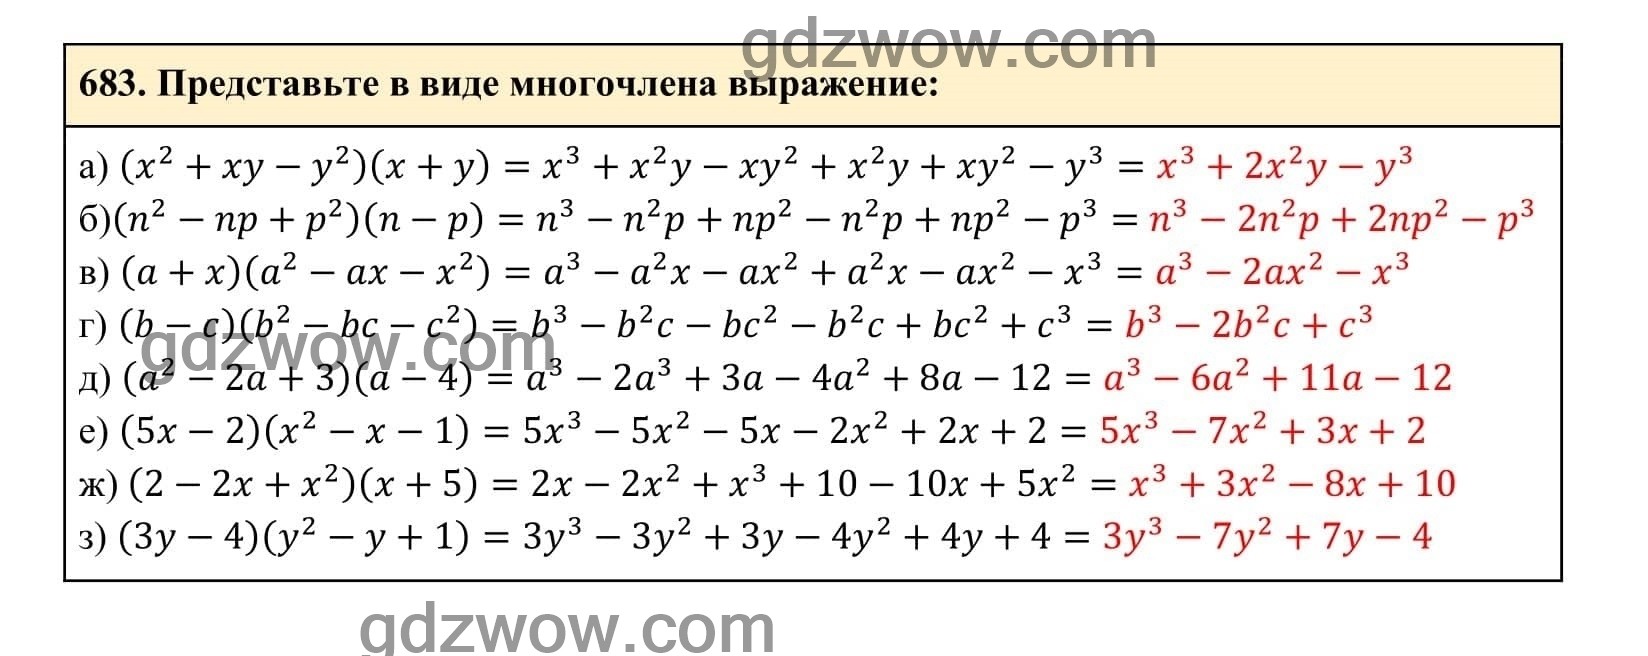 Упражнение 683 - ГДЗ по Алгебре 7 класс Учебник Макарычев (решебник) - GDZwow